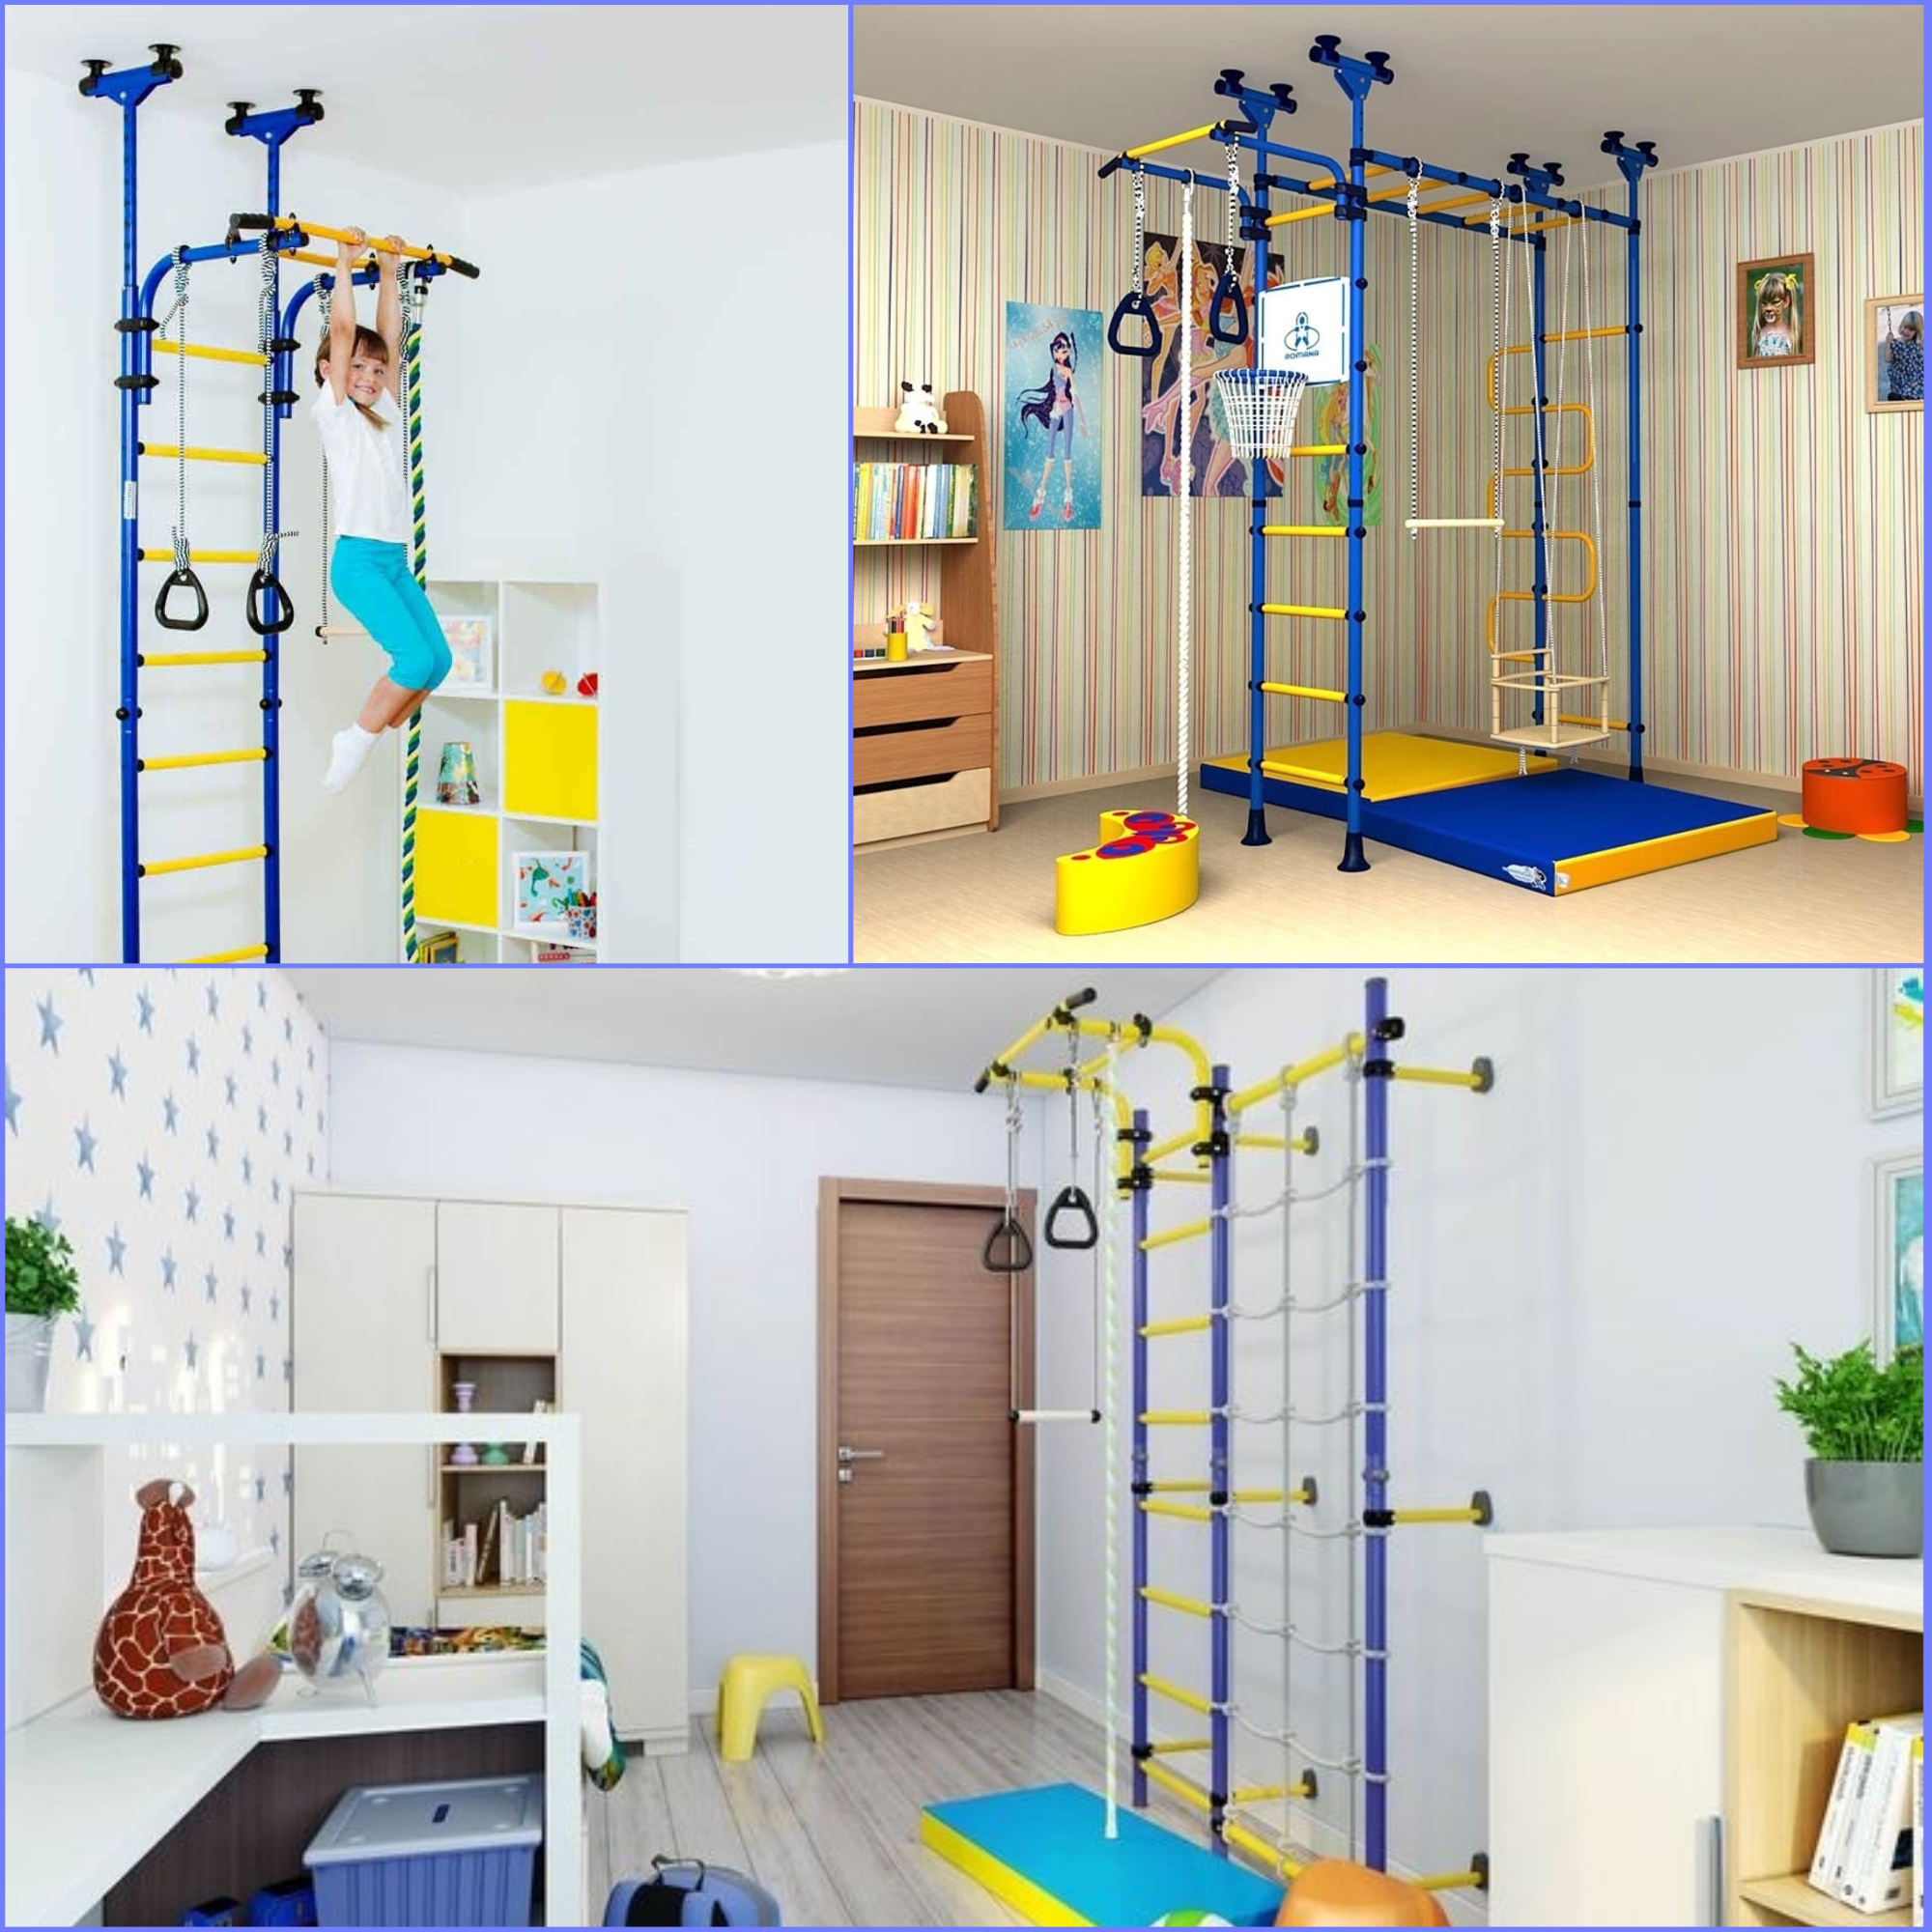 Шведская стенка для детей в квартиру: обзор, варианты креплений